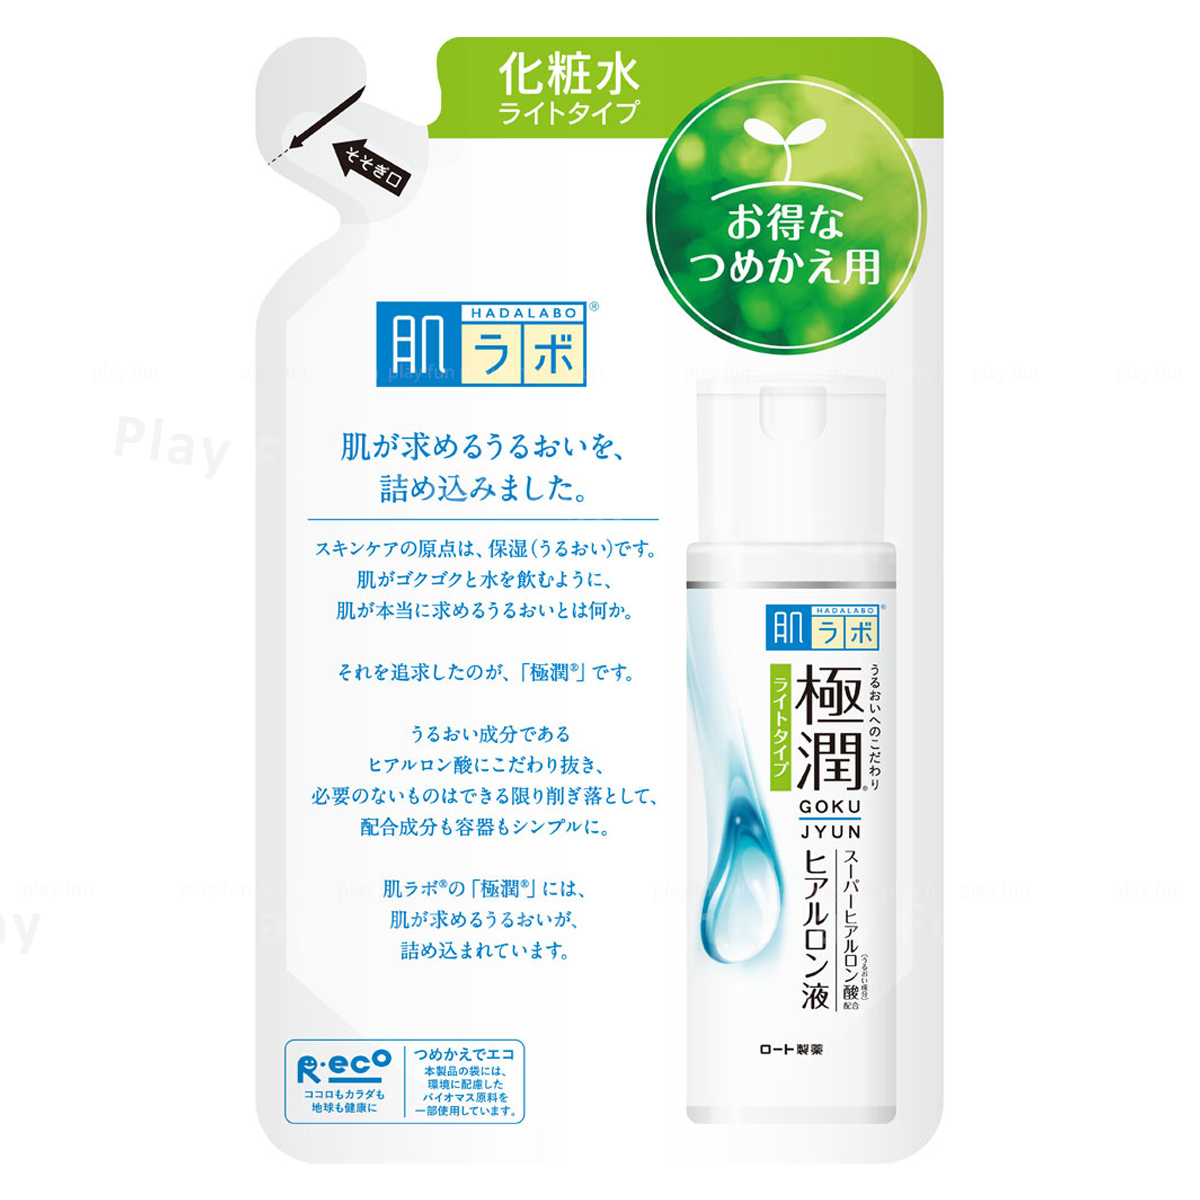 樂敦 - 肌研極潤保濕化妝水 (清爽型) (補充裝)